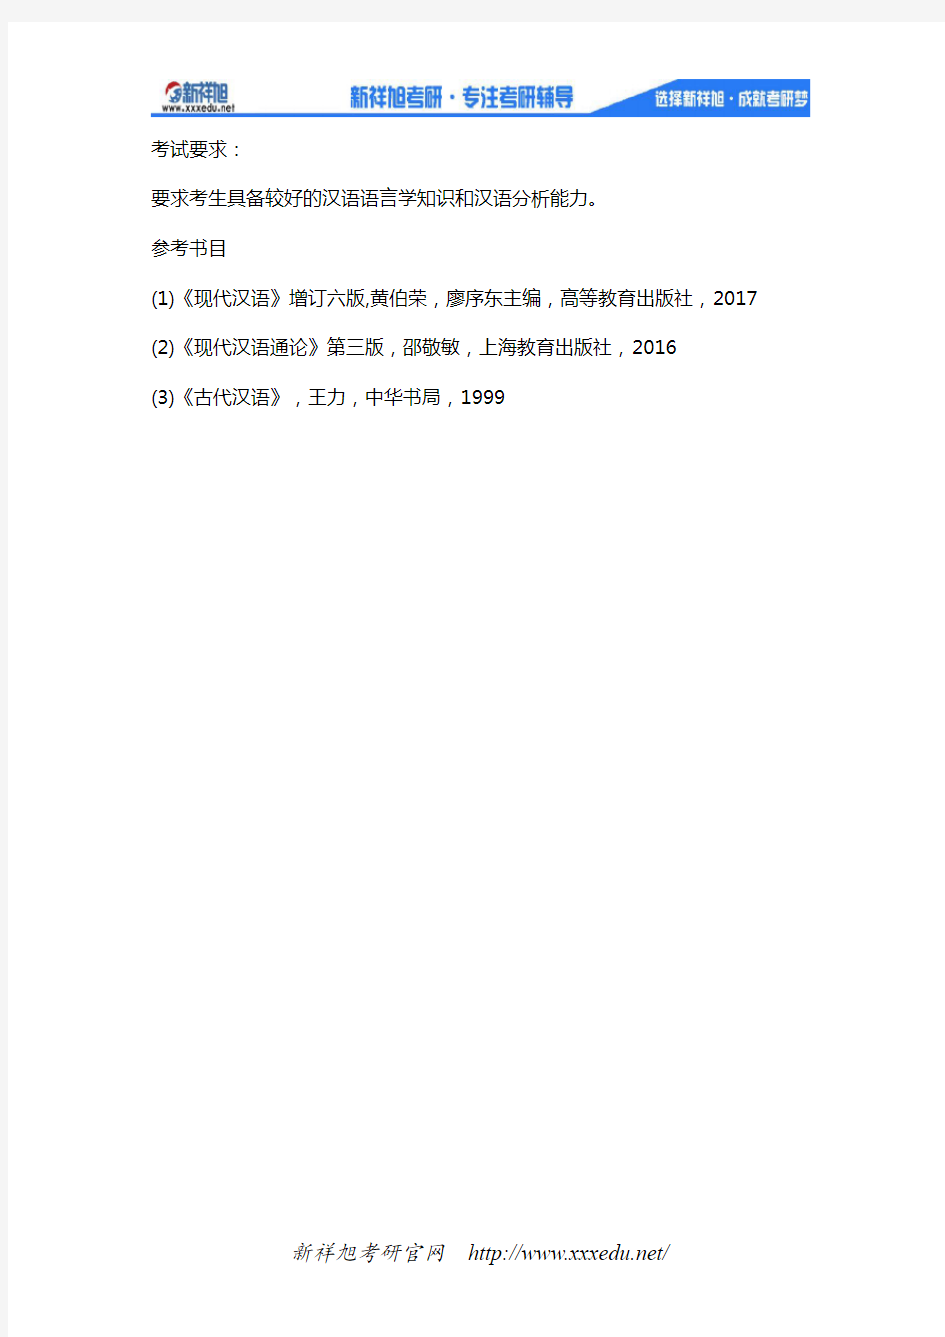 广西大学2020年《现代汉语与古代汉语(896)》考试大纲与参考书目